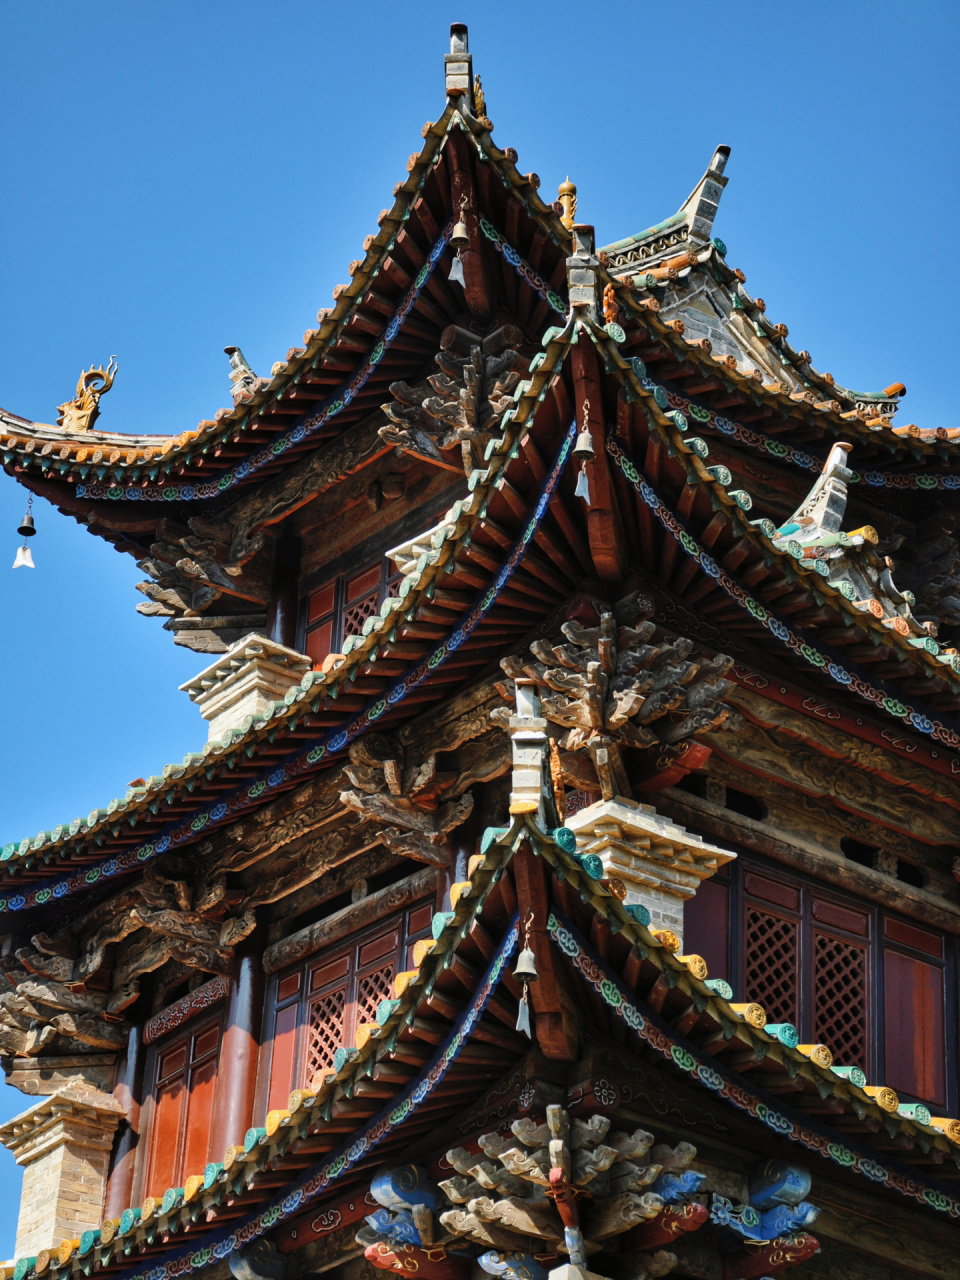 中国古建筑,结构与艺术的美学 中国古建筑讲究的是美学的选择,美是古